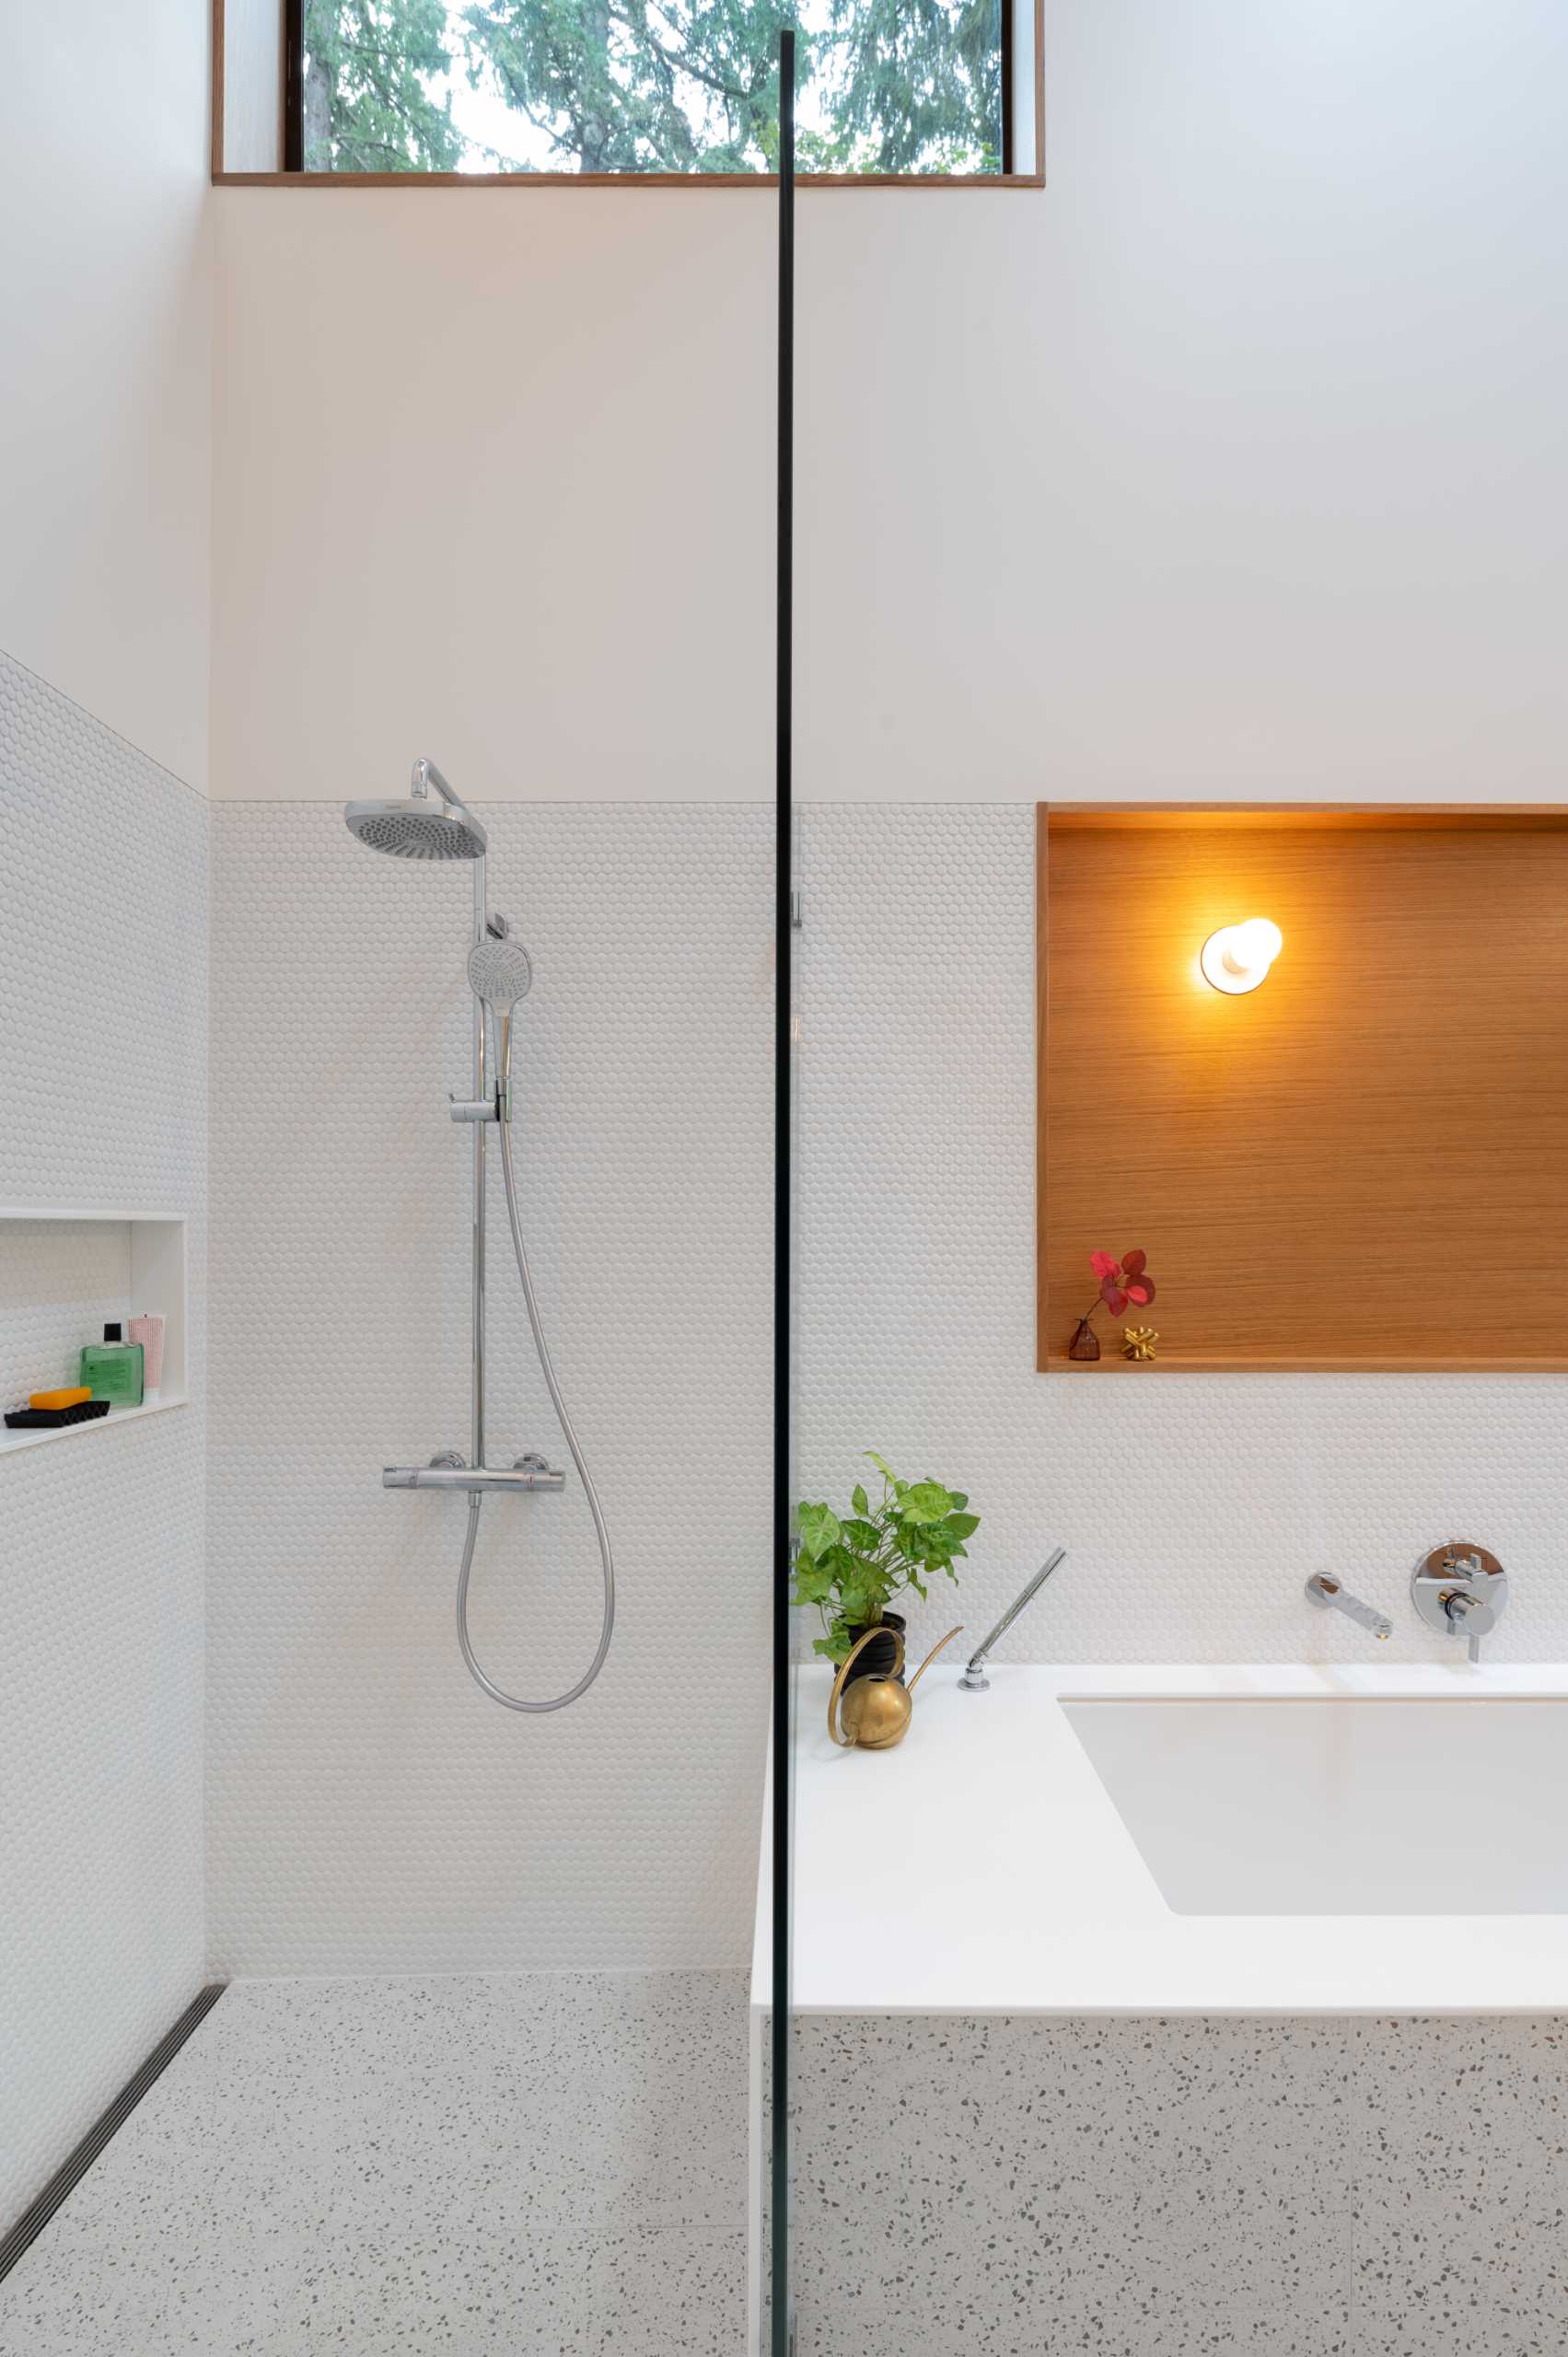 یک حمام مدرن با دیوارهای پوشیده از کاشی‌های پنی سفید، یک وان حمام توکار، و یک دوش با طاقچه قفسه‌بندی.